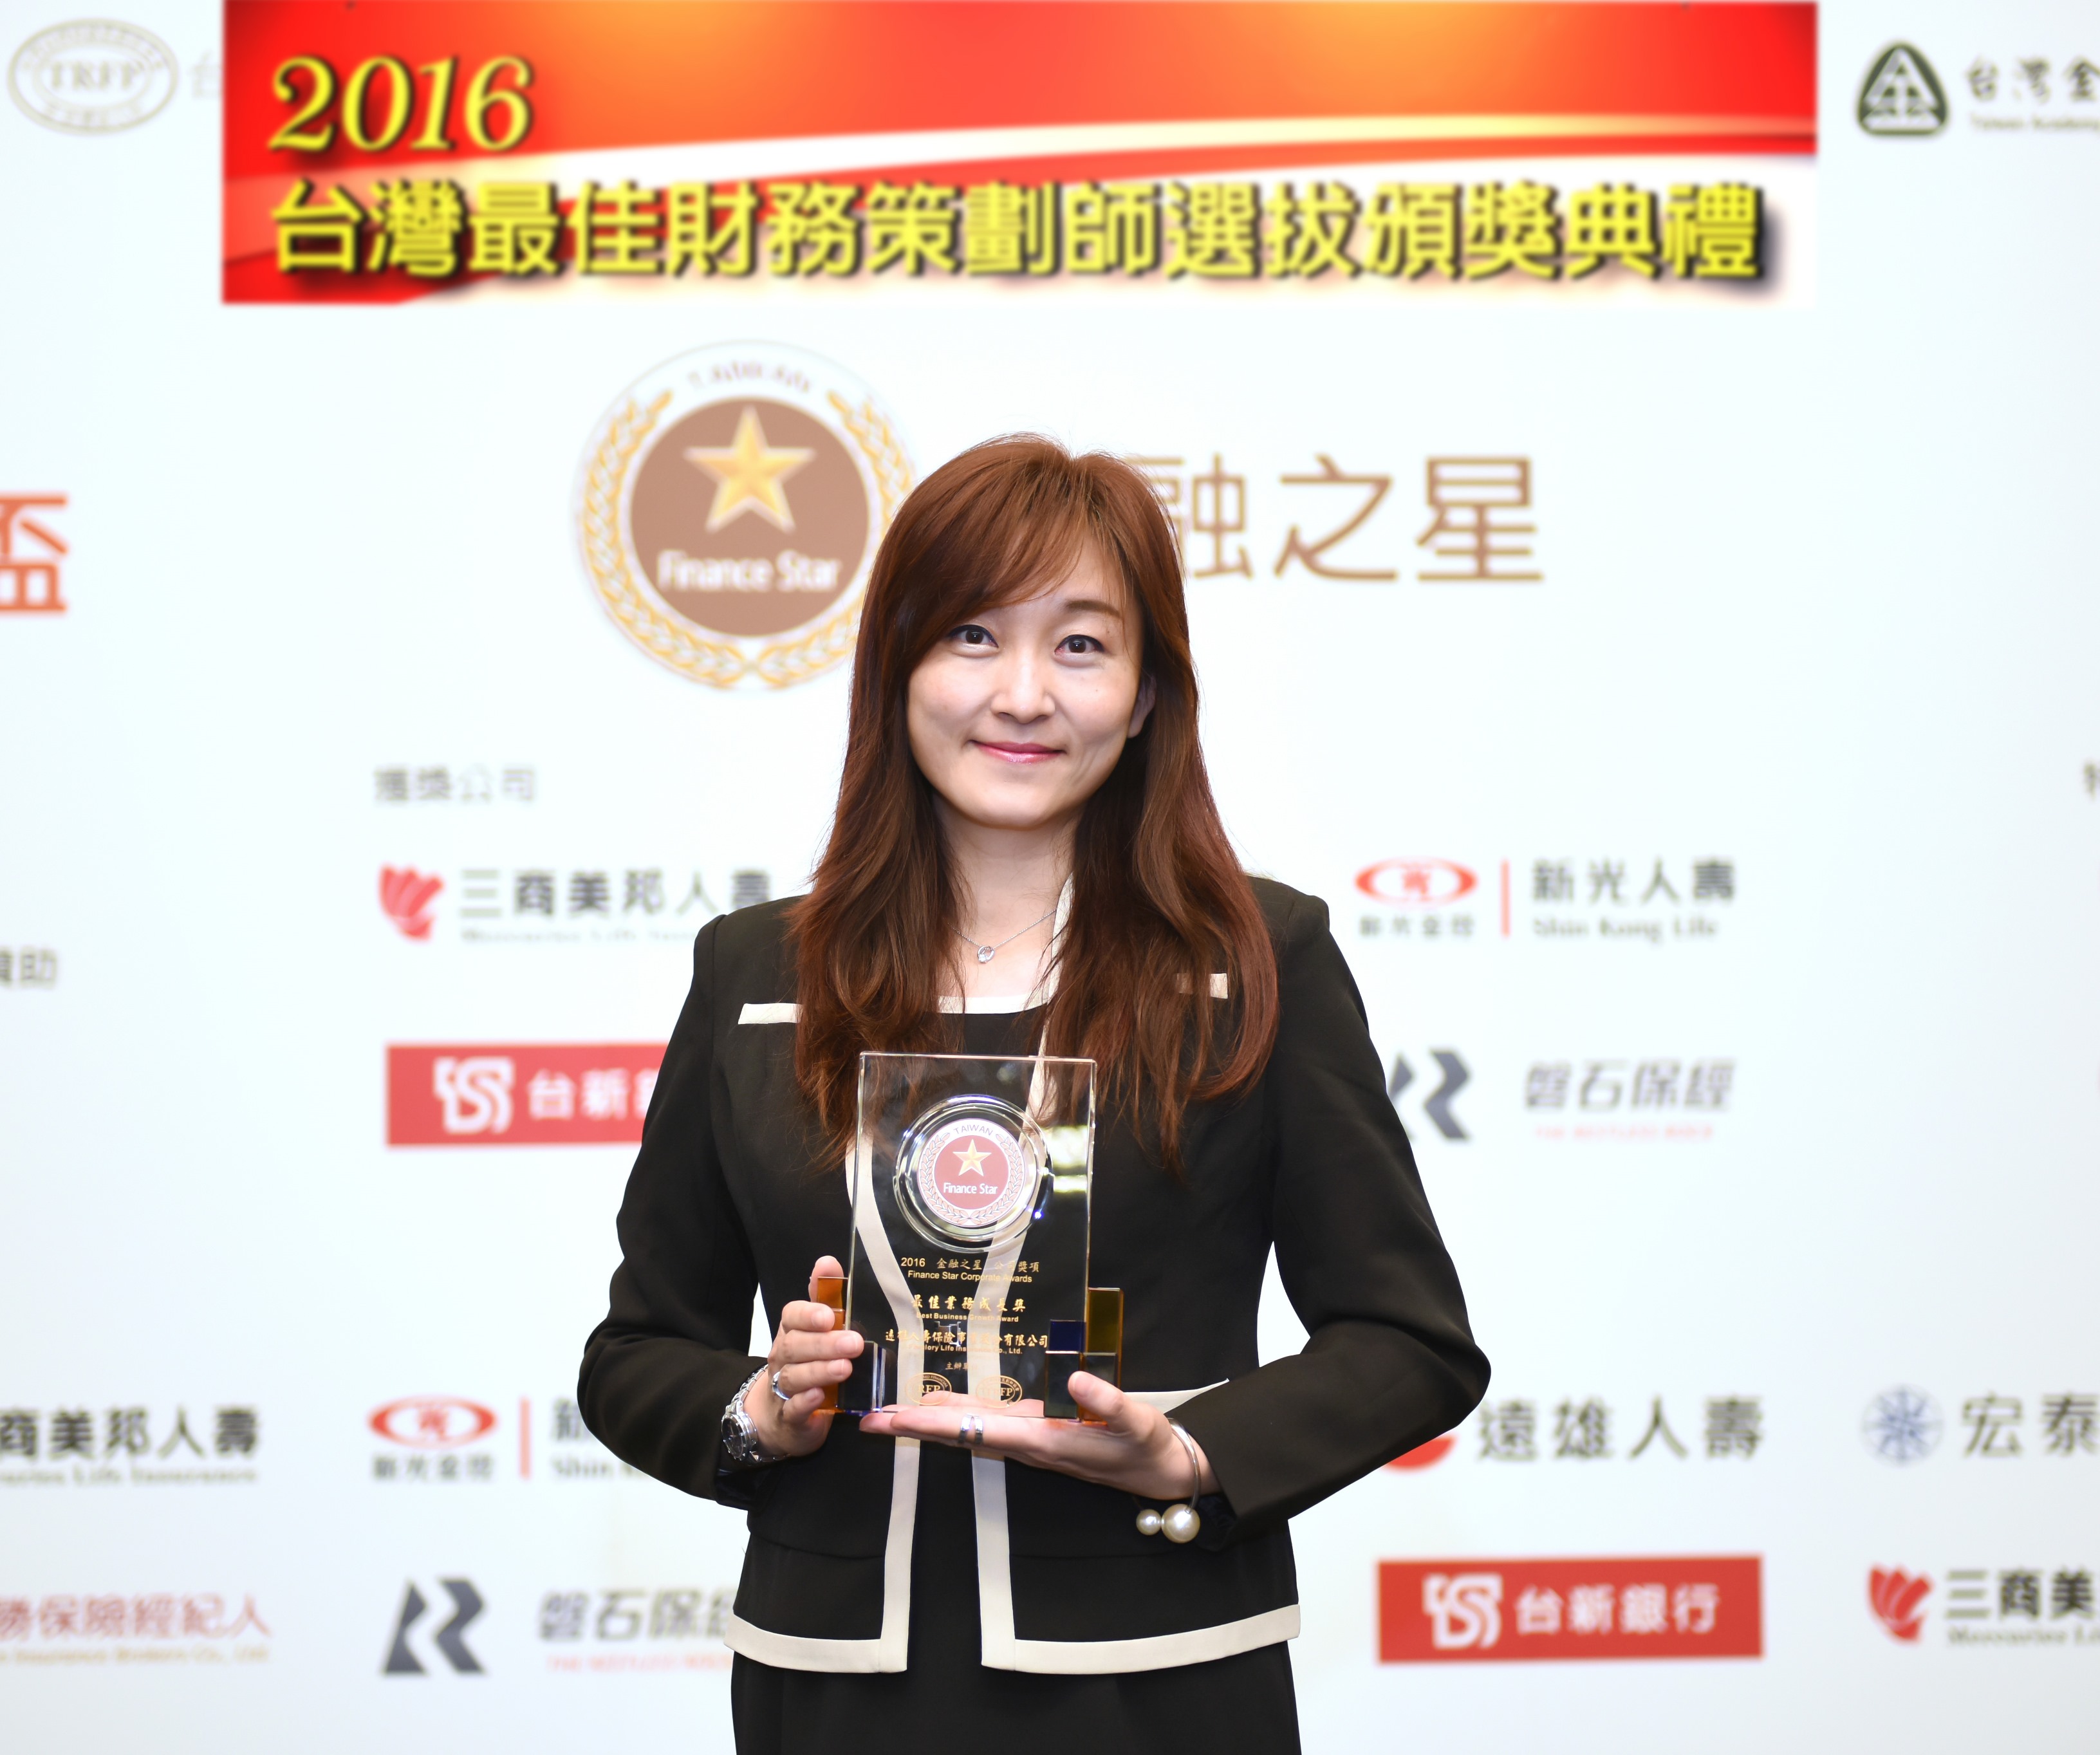 圖說：遠雄人壽副總經理何京玲代表領取「金融之星」榮耀獎座。